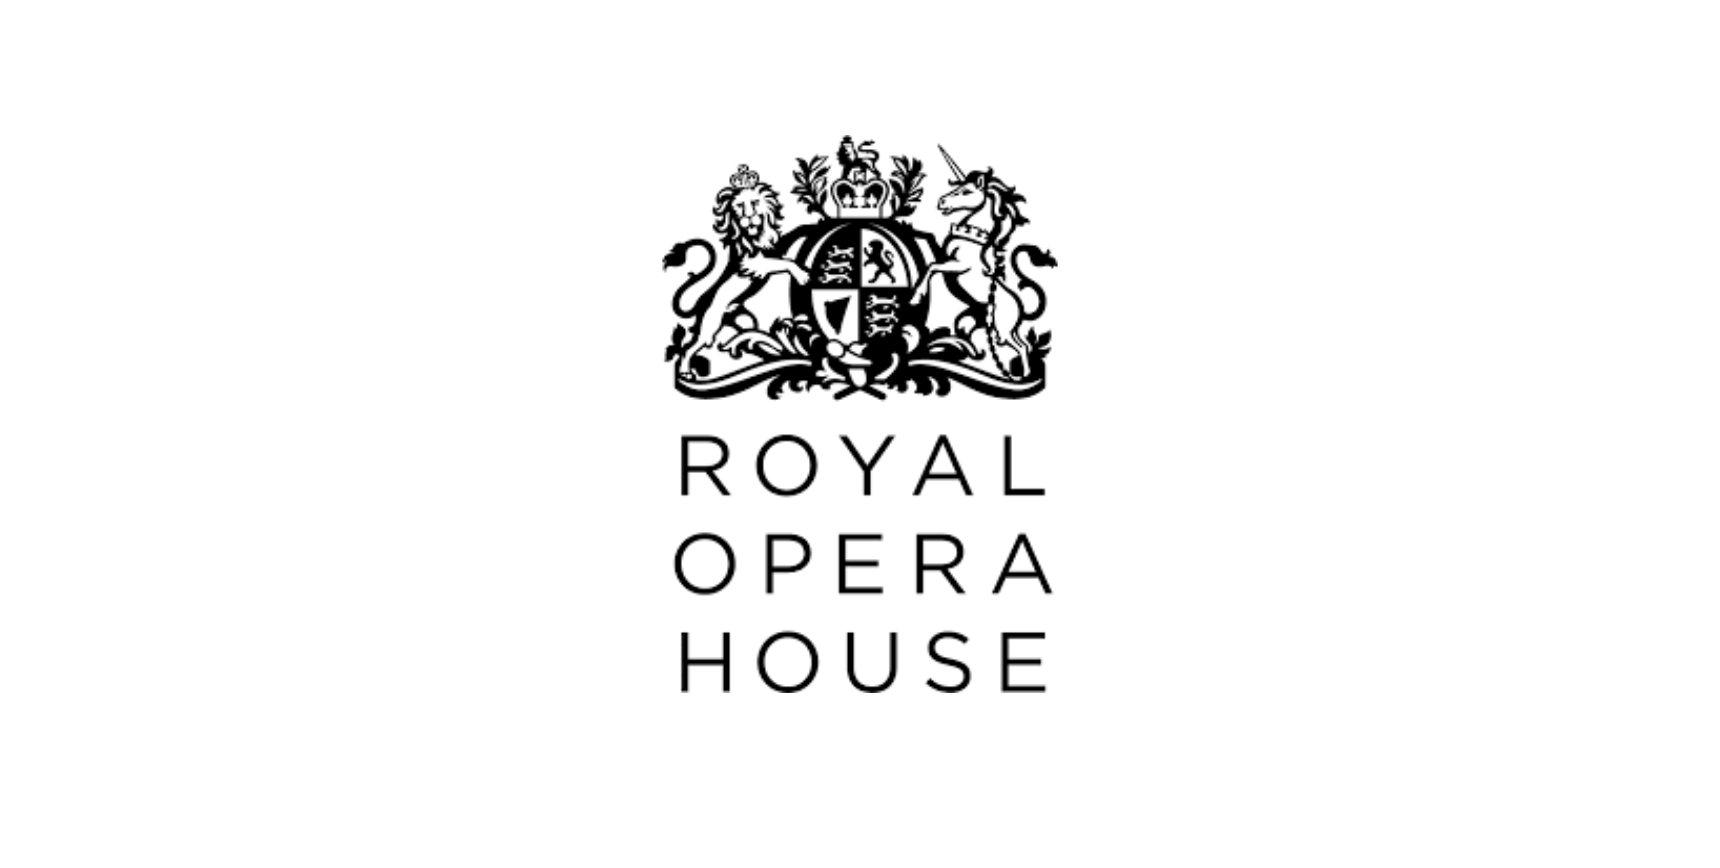 HITG Supporting Royal Opera House – Delivering Mental Health Workshops